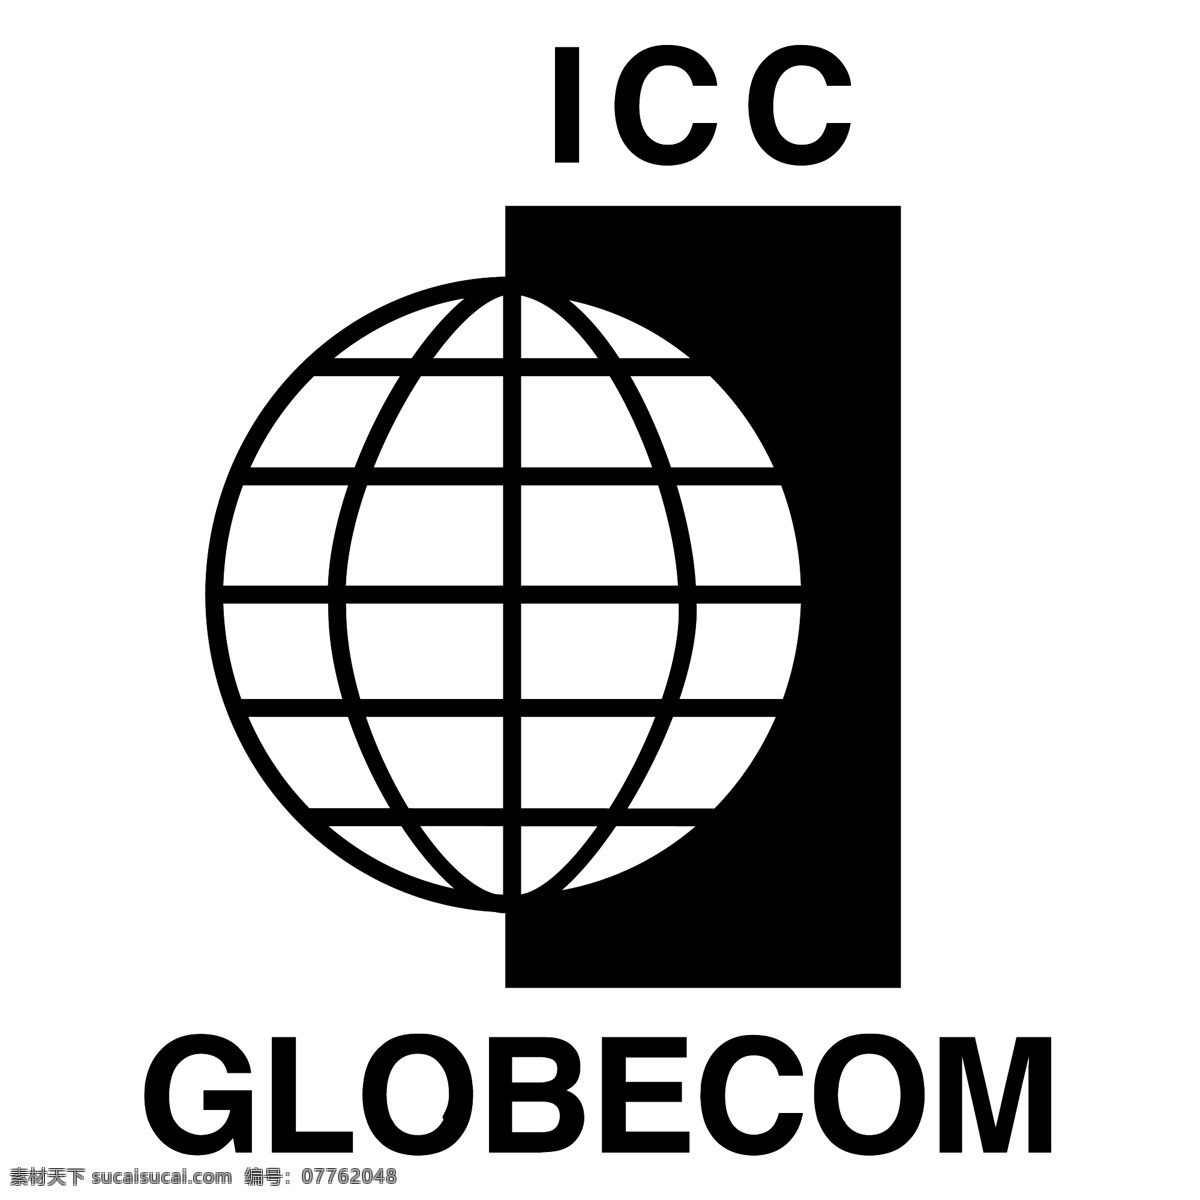 国际 刑事 法院 全球 通信 系统 统统 标志 icc 标识 免费 psd源文件 logo设计